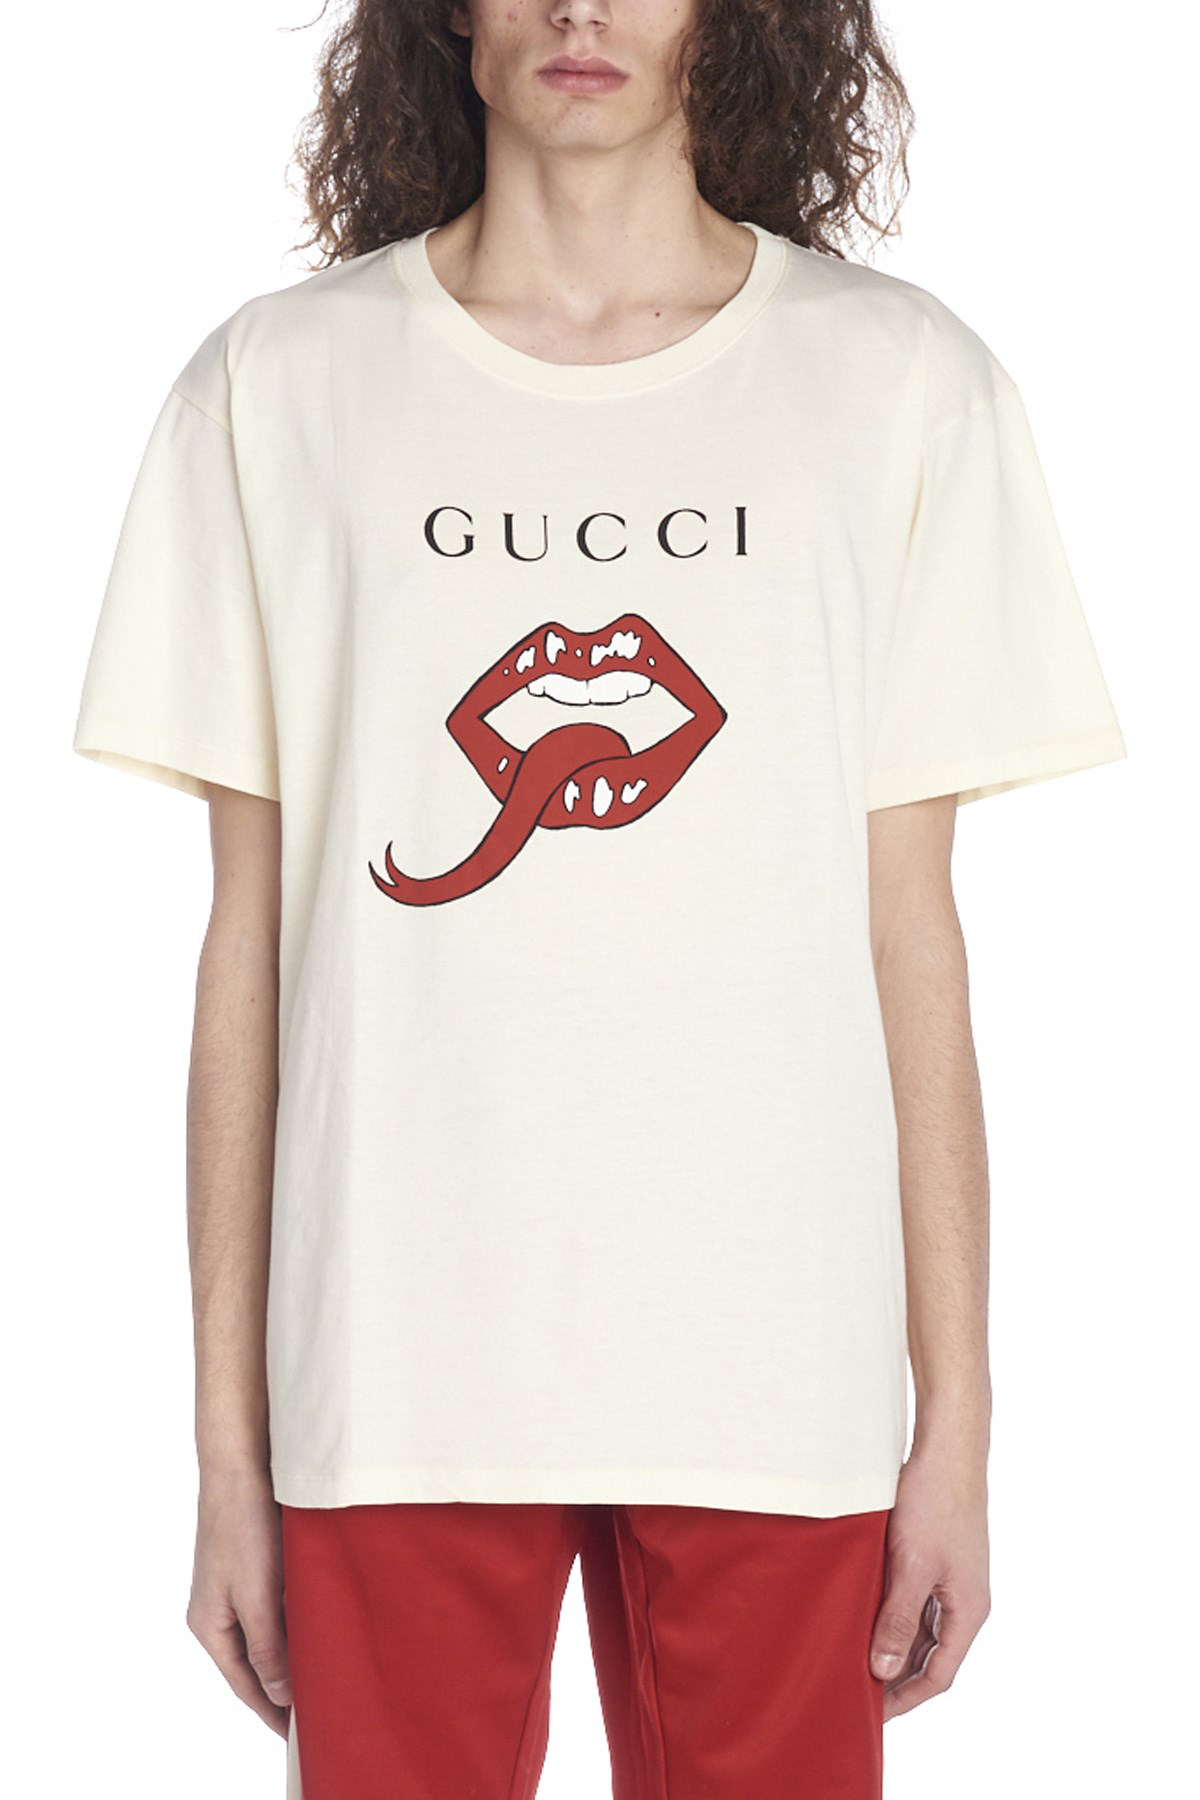 gucci tongue shirt